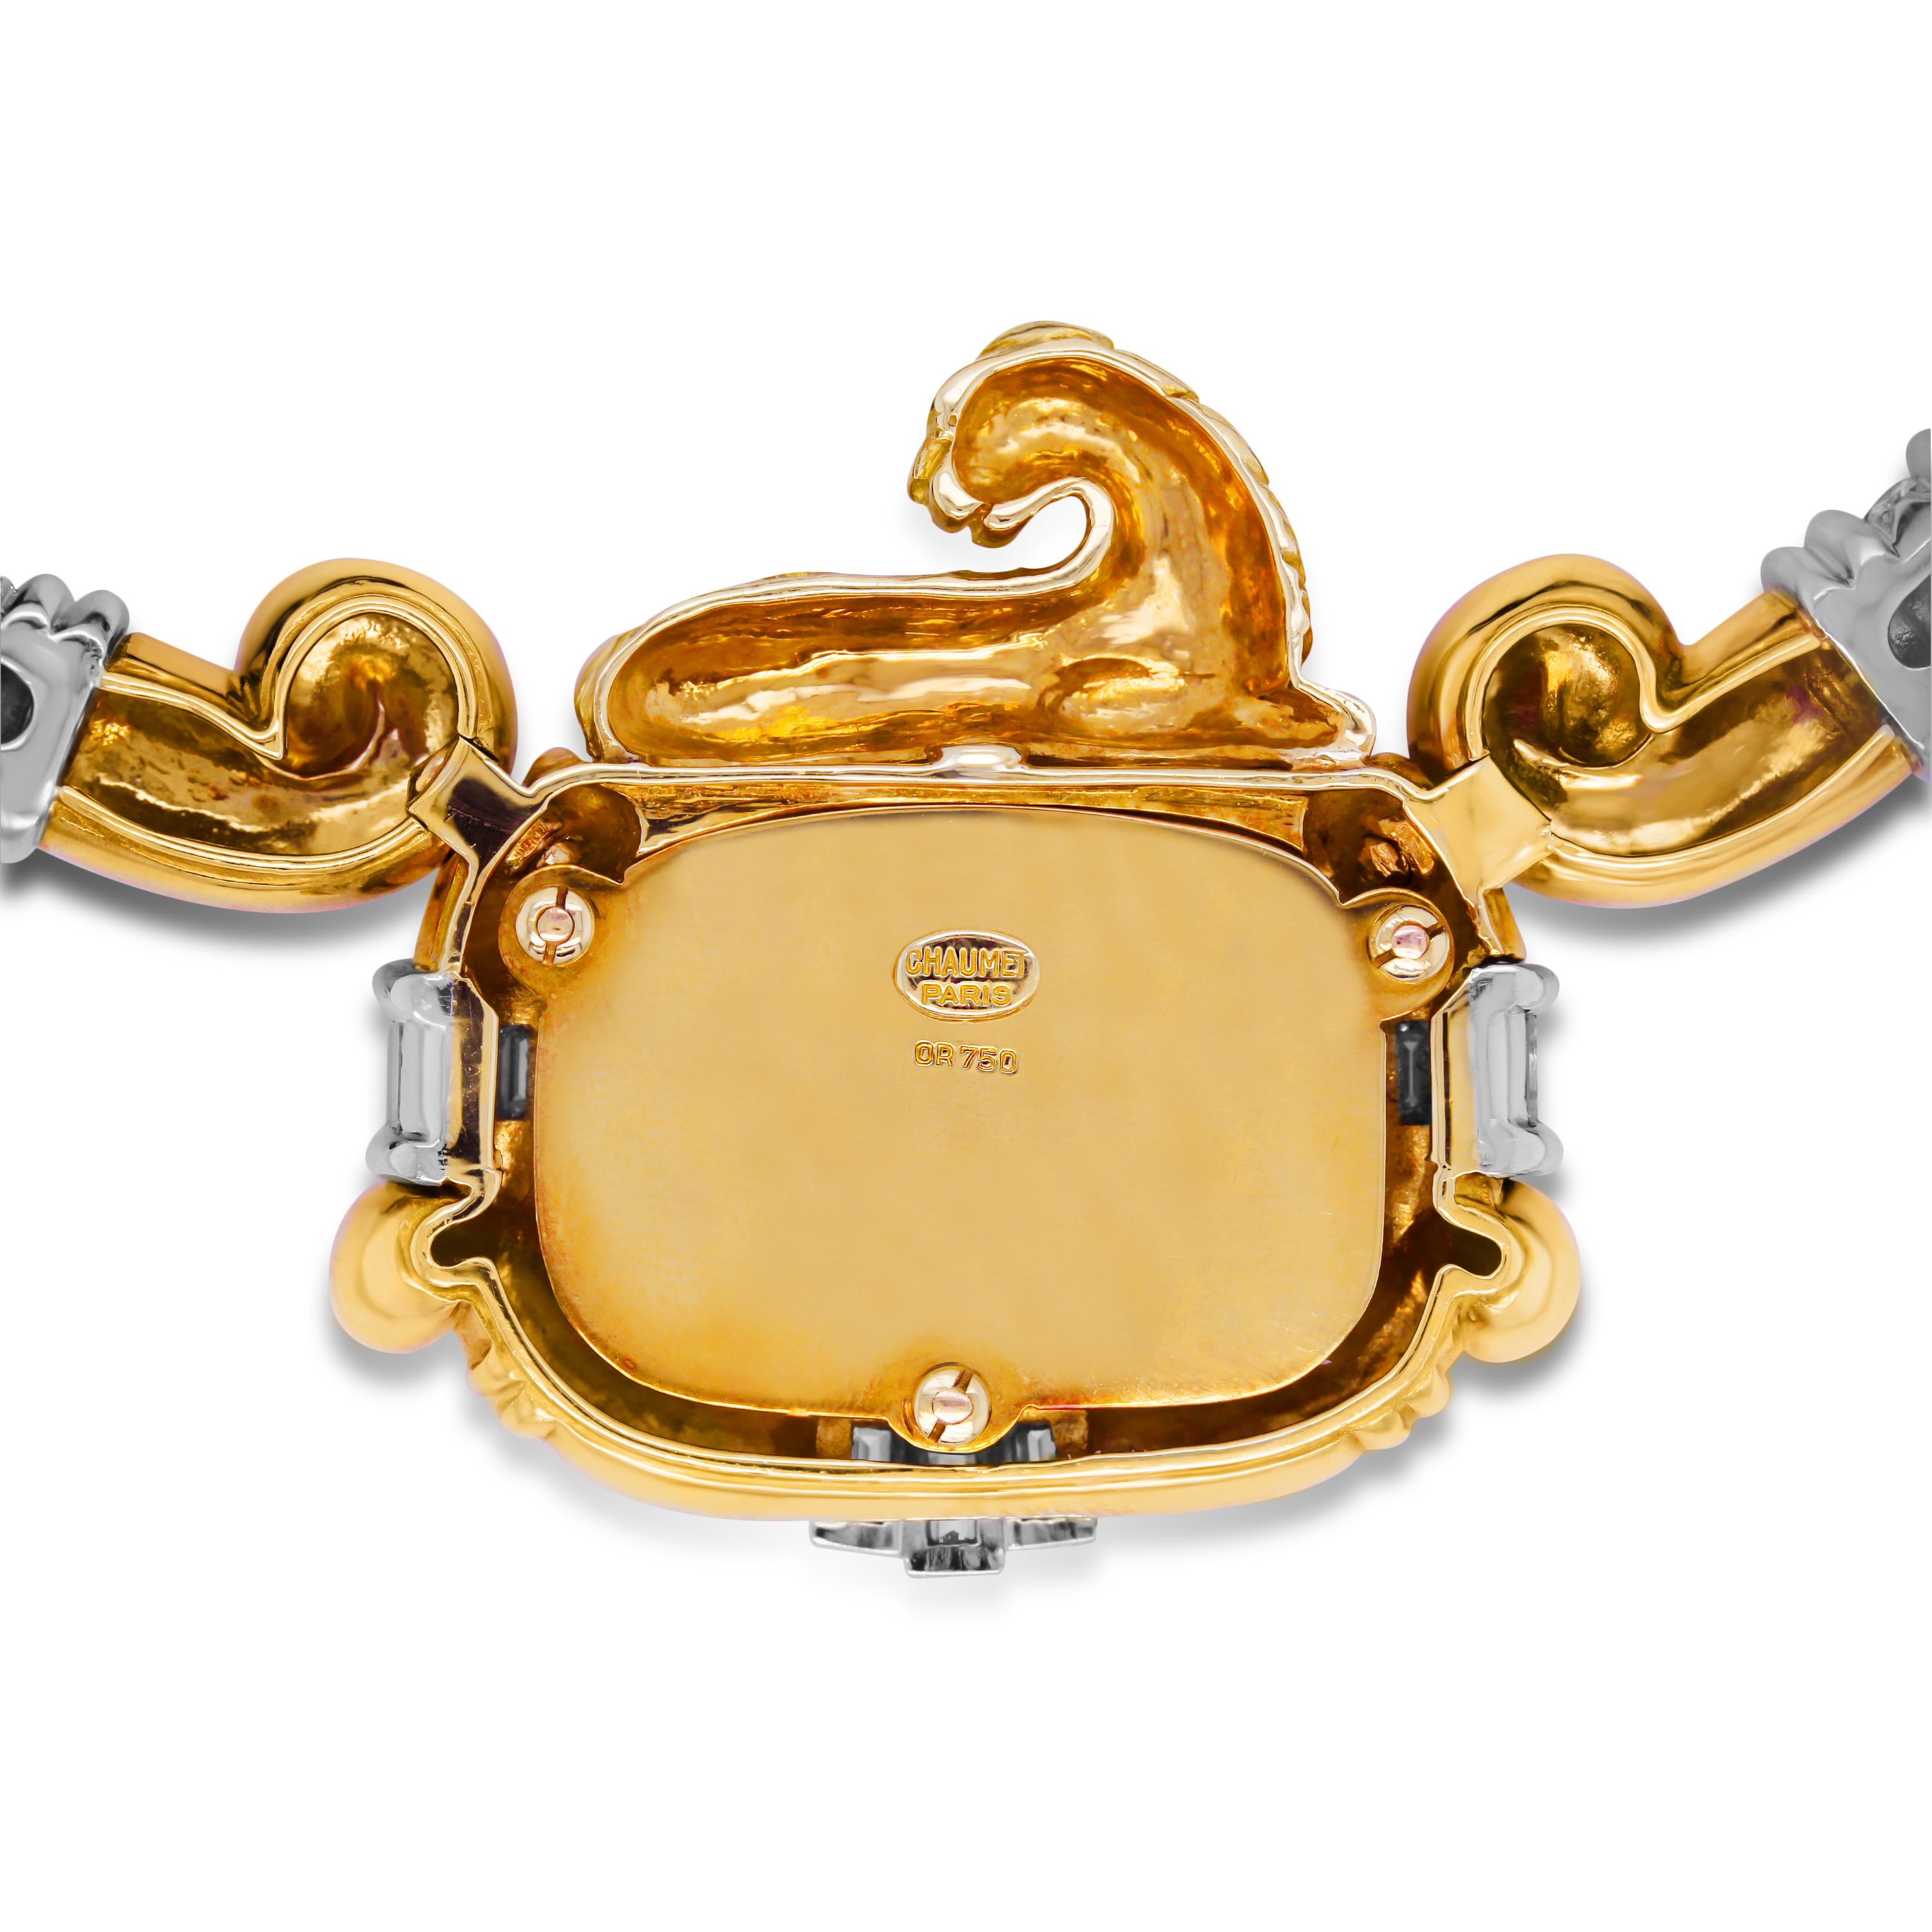 Chaumet Halskette mit Löwenanhänger, 18 Karat Gold Runde und Baguette-Diamanten

Dieser hochmoderne Anhänger besteht aus einem Löwen und zwei diamantbesetzten Anhängern an einer Schnur.

Ca. 3,50 Karat F-G Farbe, VS Reinheit runde und